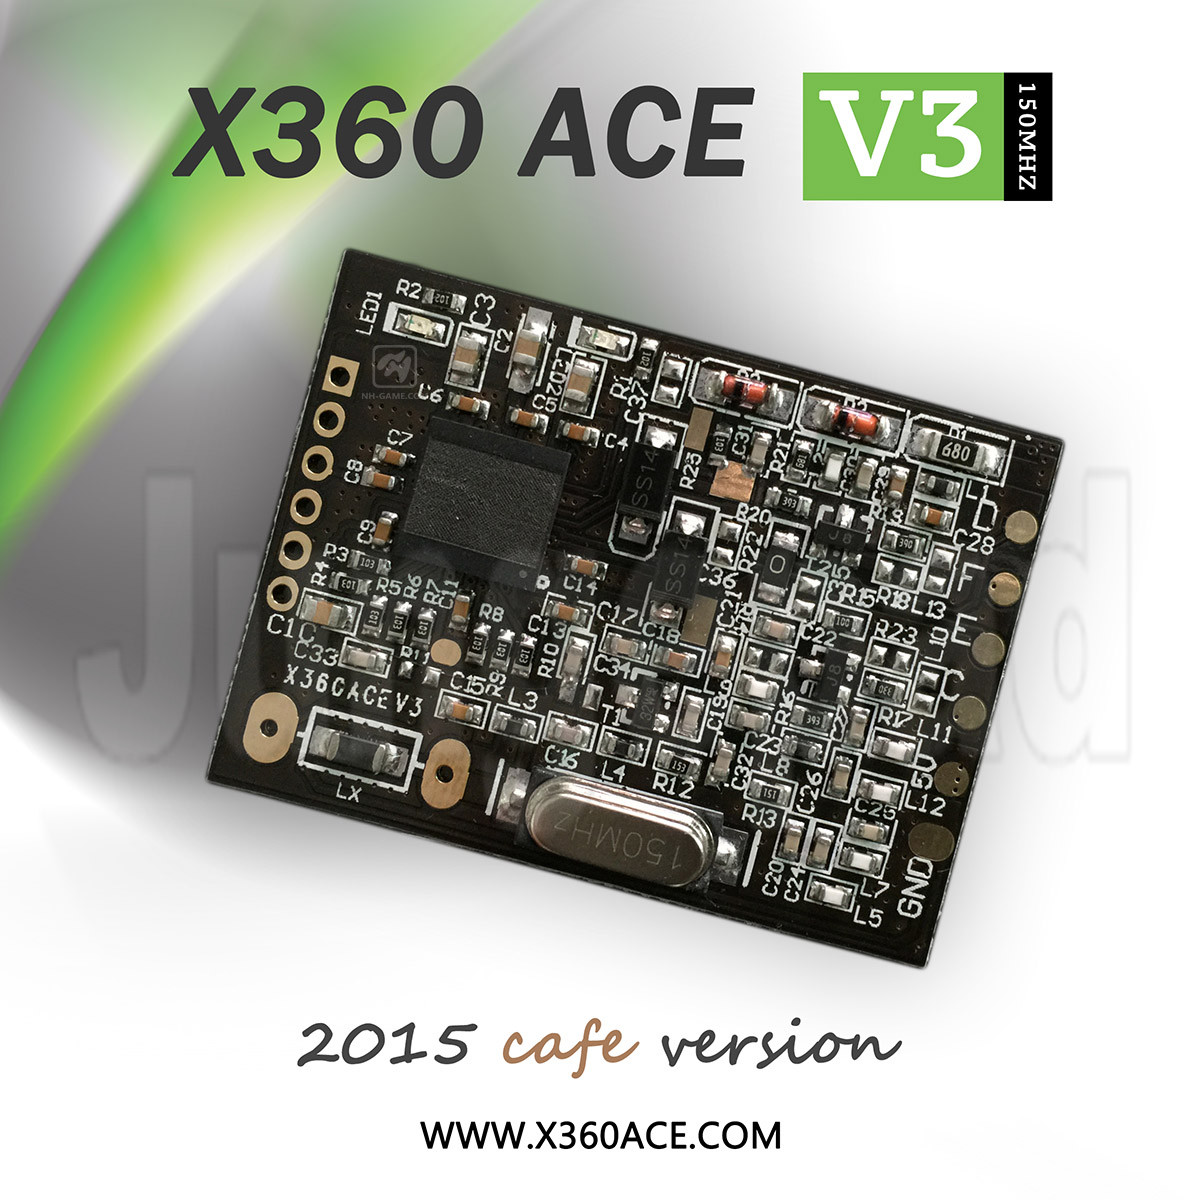 X360 ACE V3